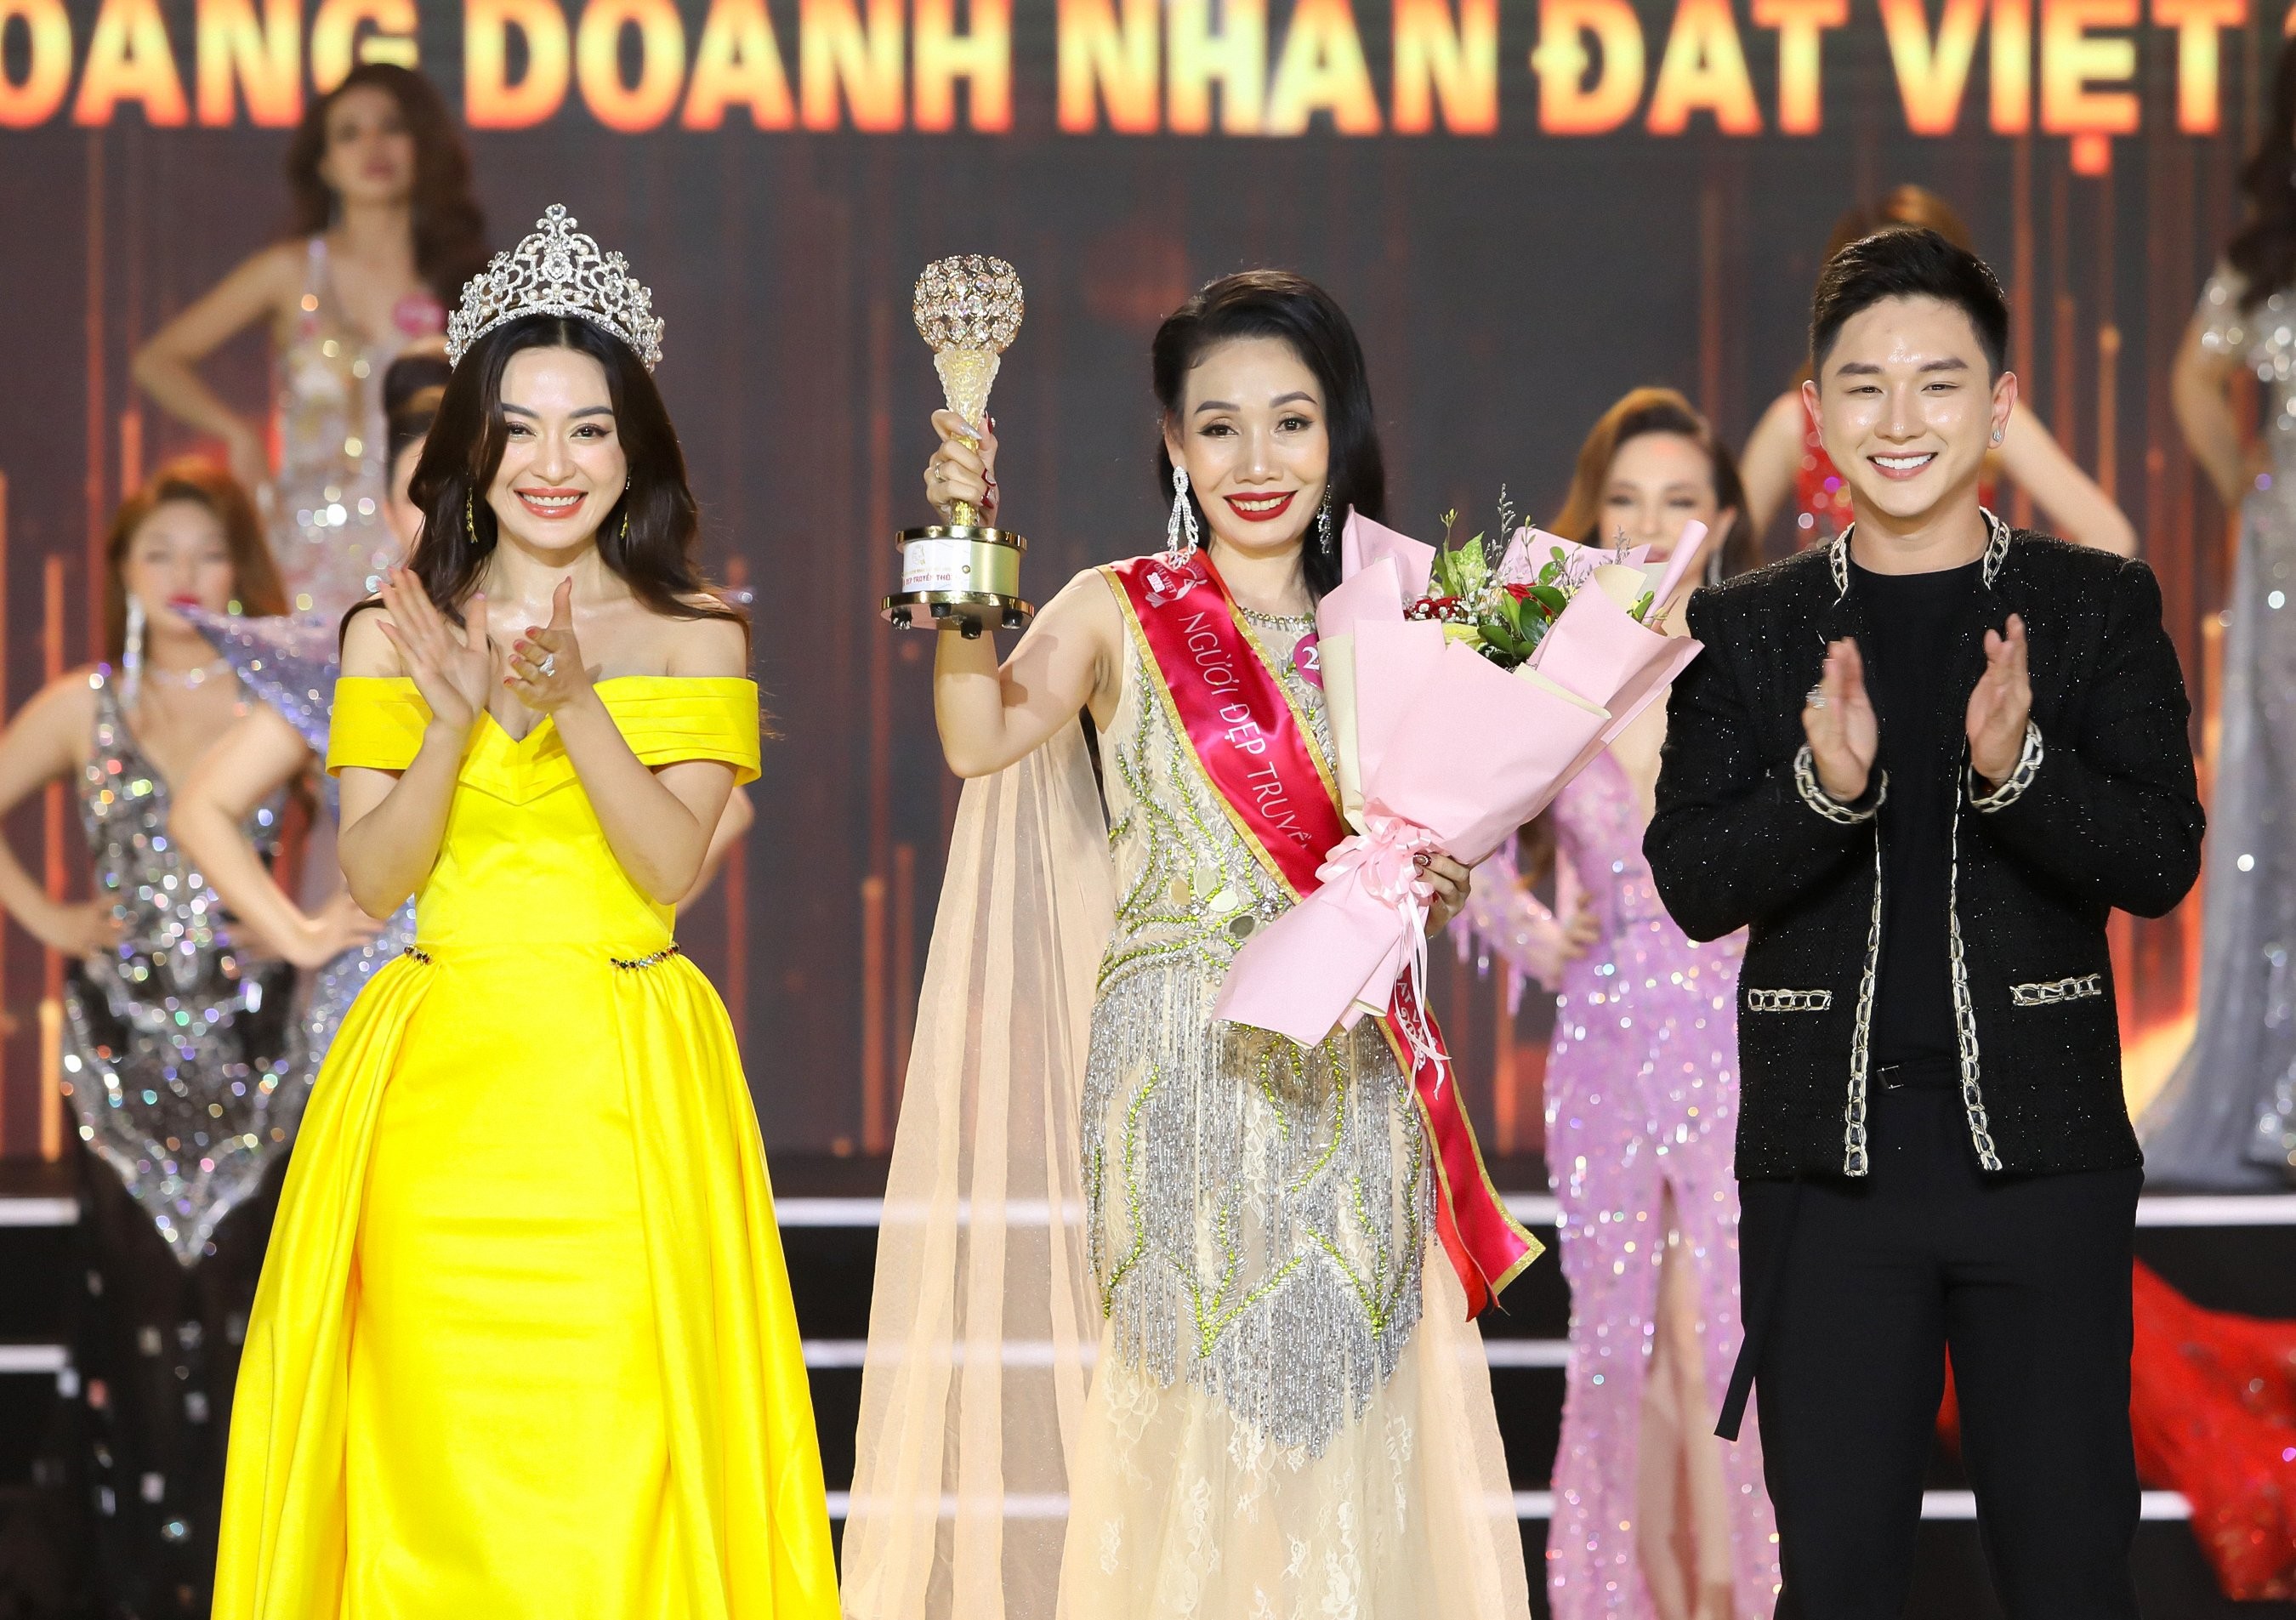 Doanh nhân Nguyễn Thị Tuyết Minh người đẹp truyền thông cuộc thi “Nữ hoàng Doanh nhân đất Việt 2022”